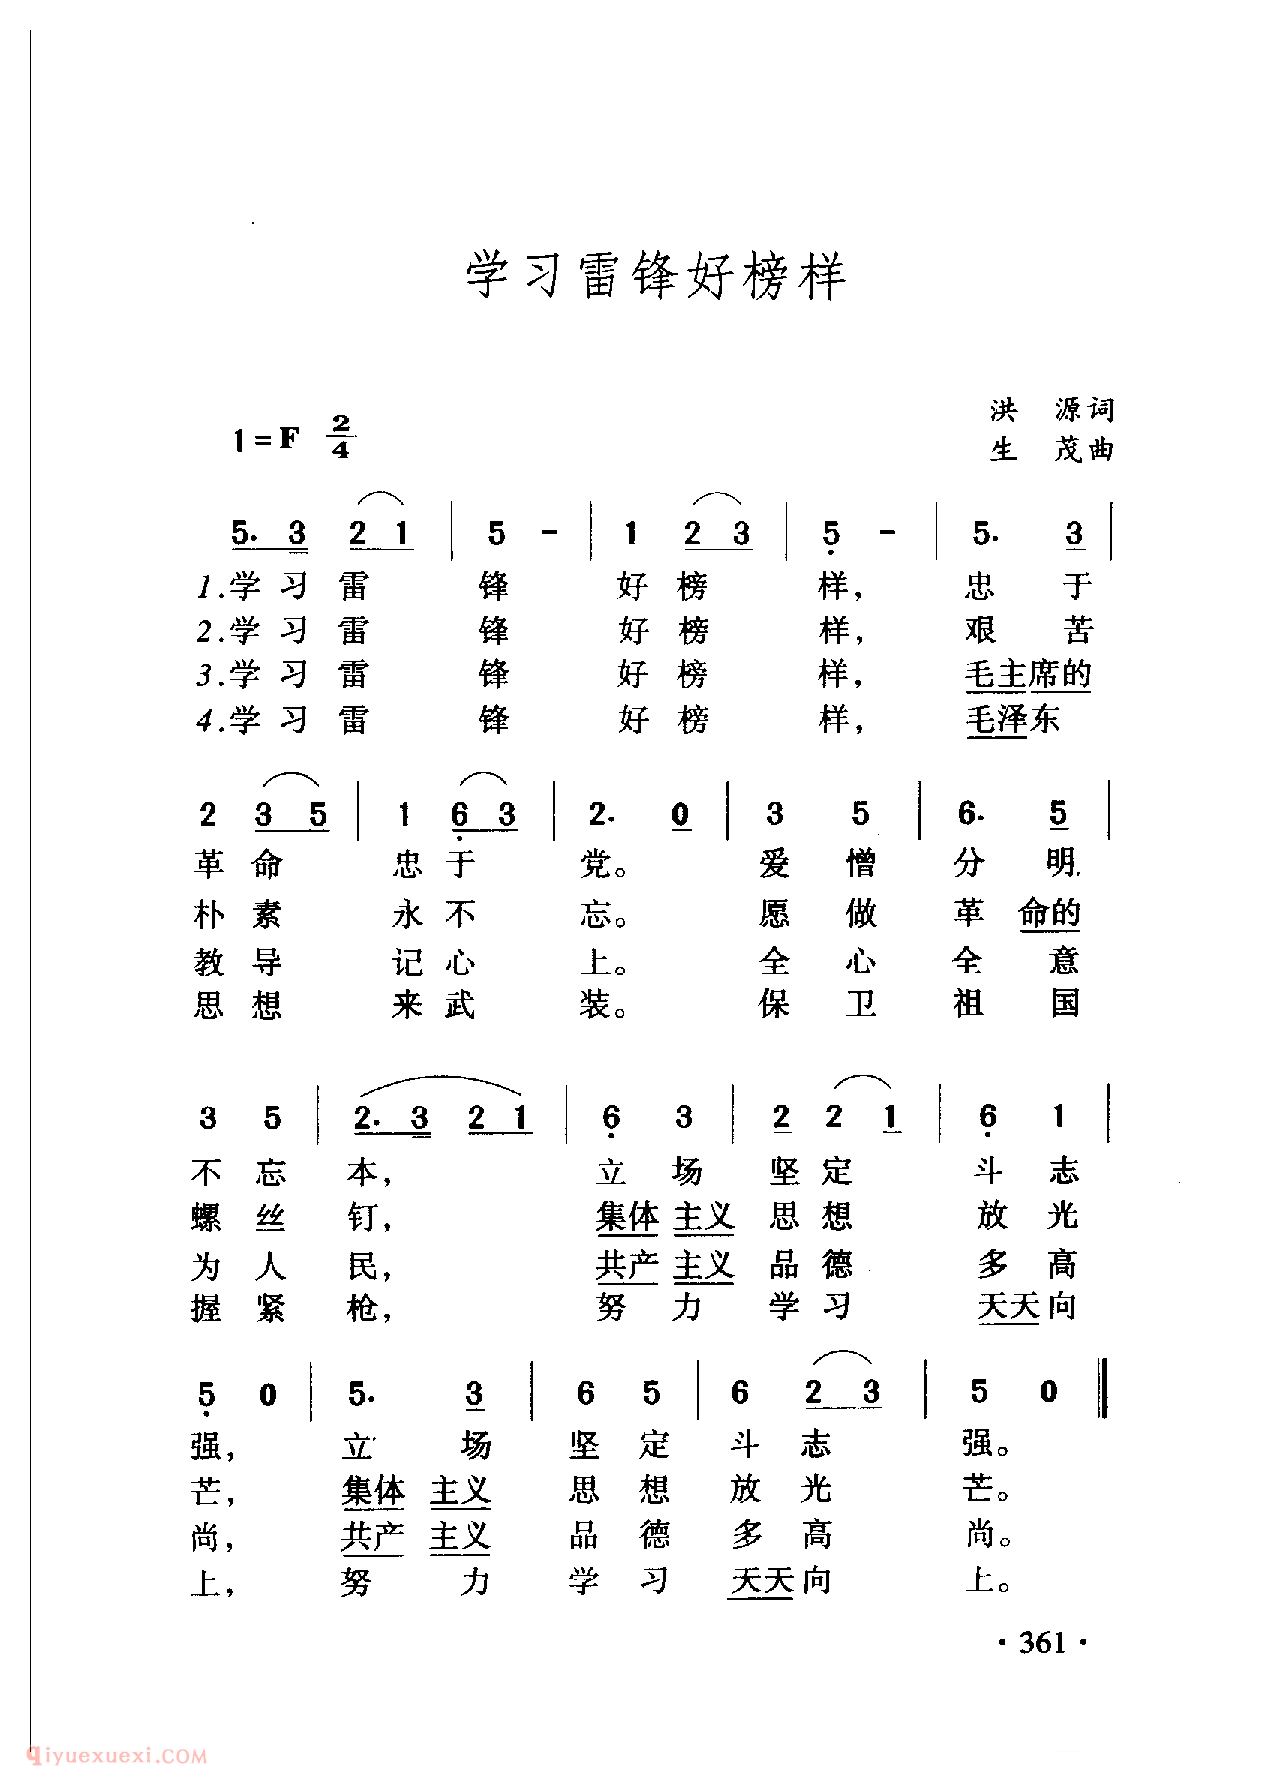 中国名歌[学习雷锋好榜样]乐谱